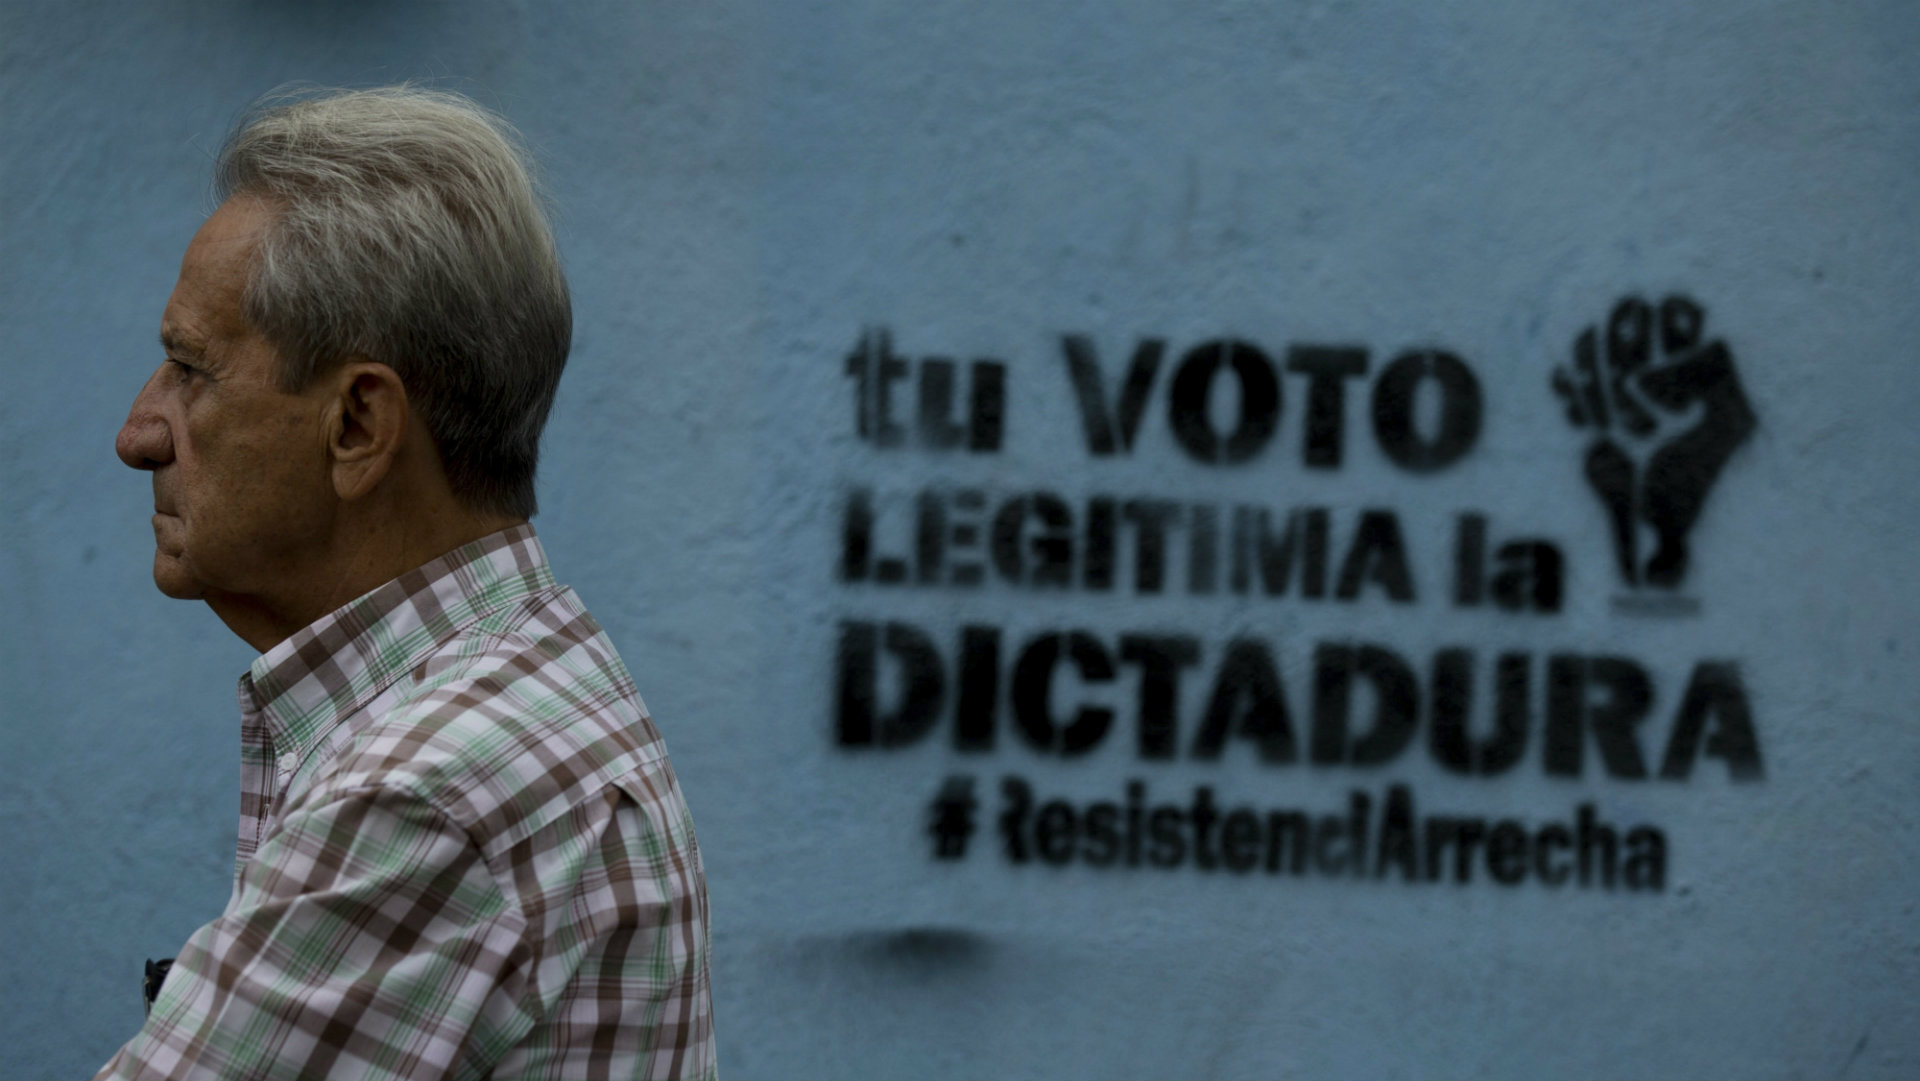 EEUU condena "ausencia de elecciones libres y justas" en Venezuela